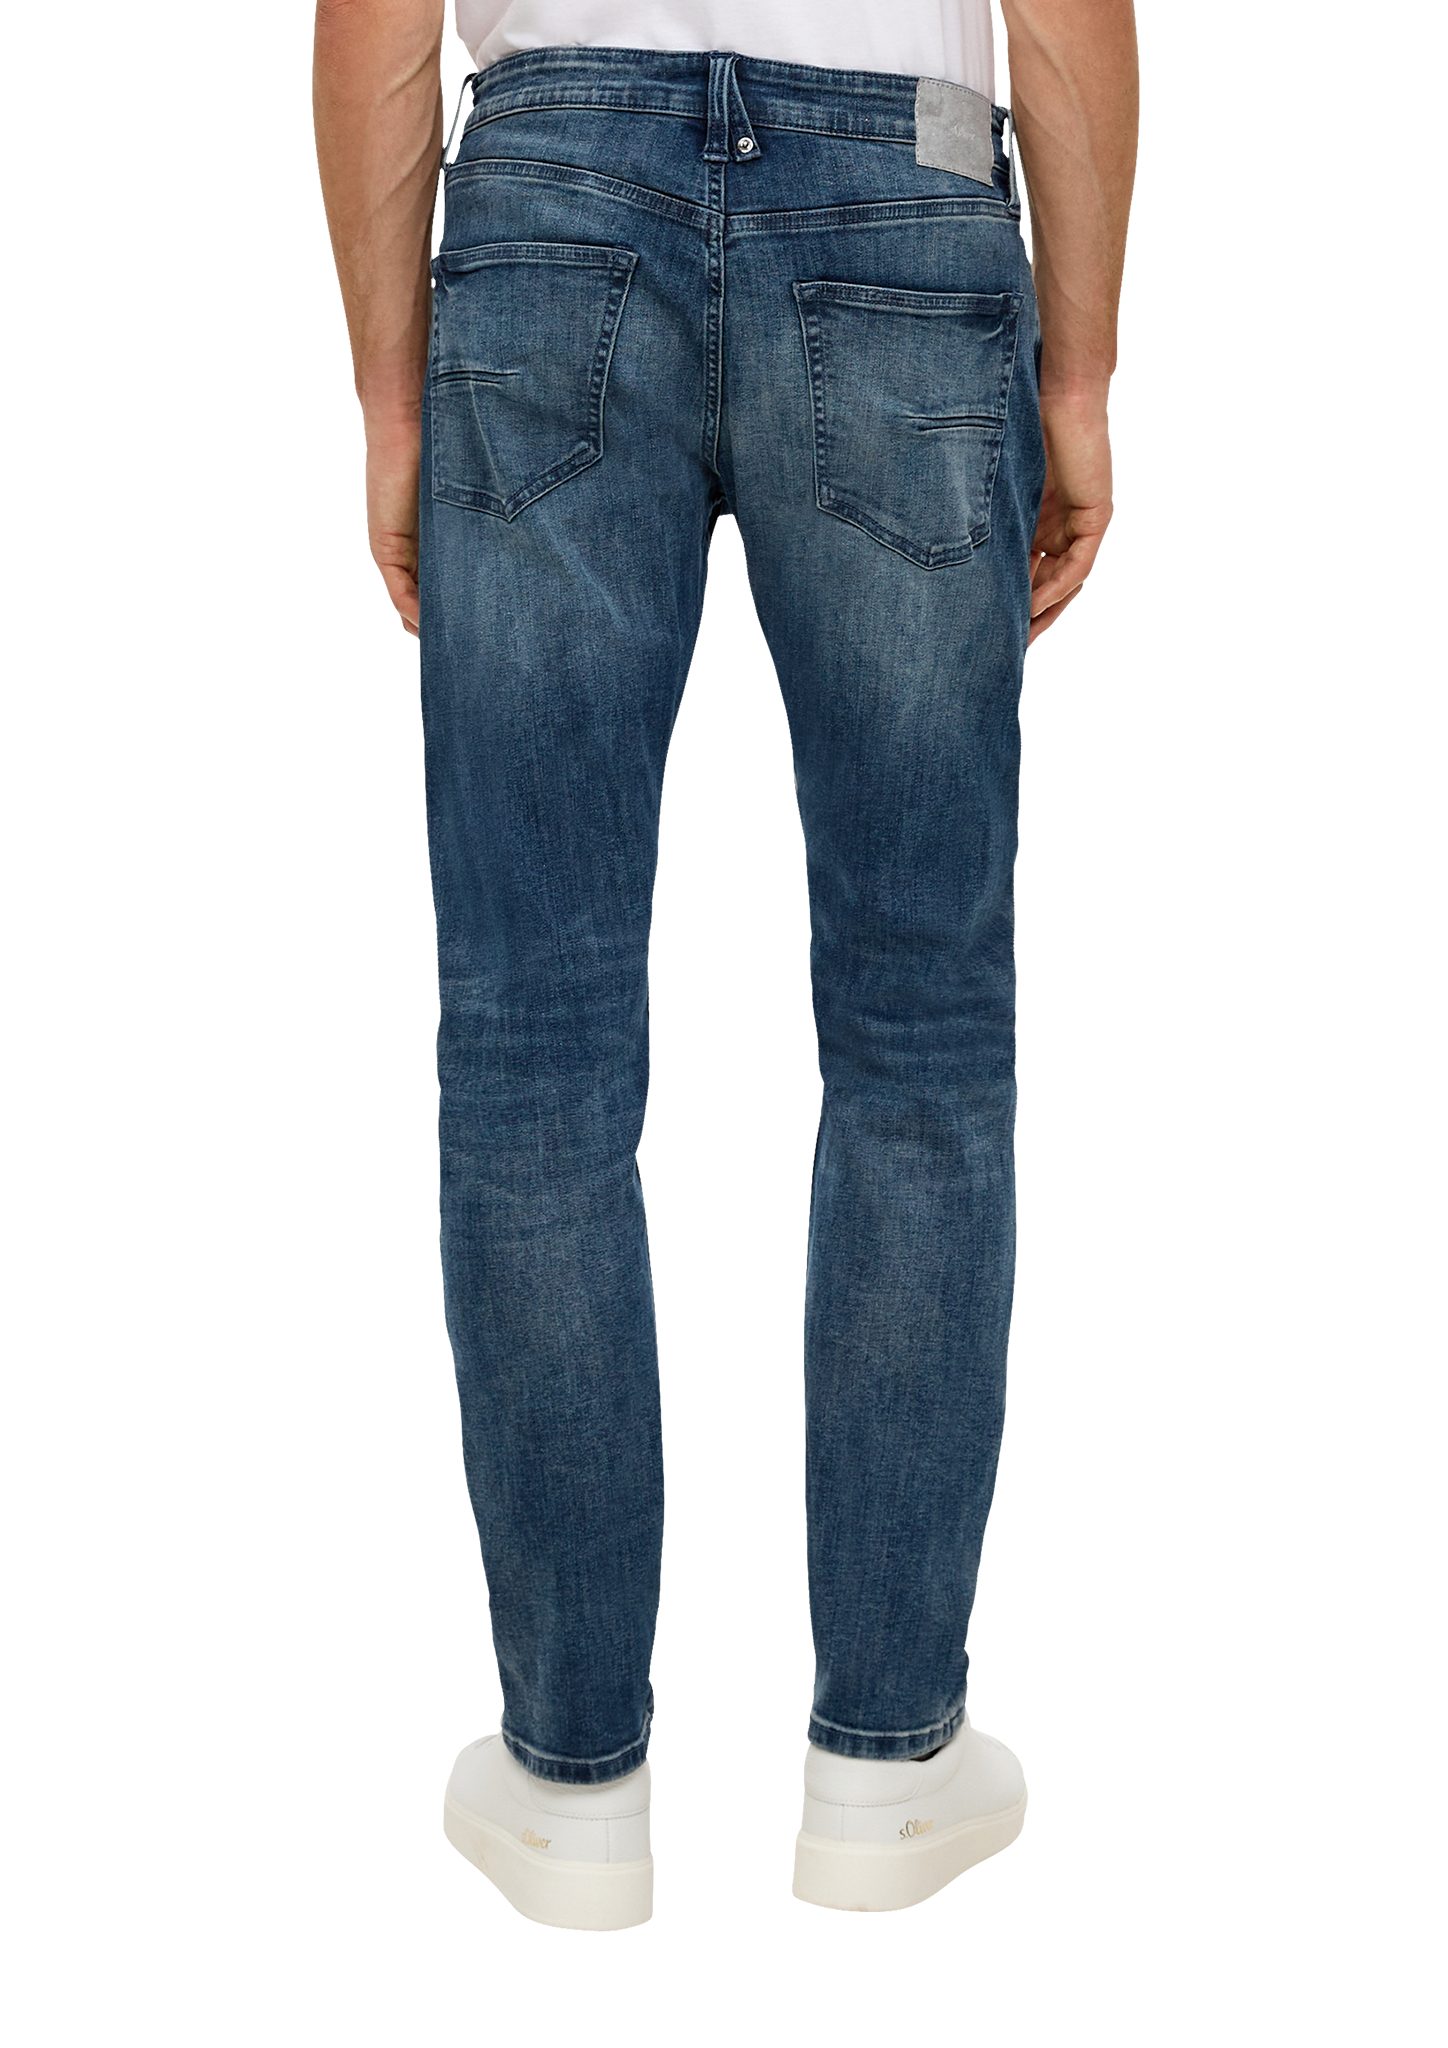 s.Oliver Stoffhose Jeans / Leg Fit Tapered Waschung Mid / Regular dunkelblau Rise 5-Pocket-Stil / / Leder-Patch